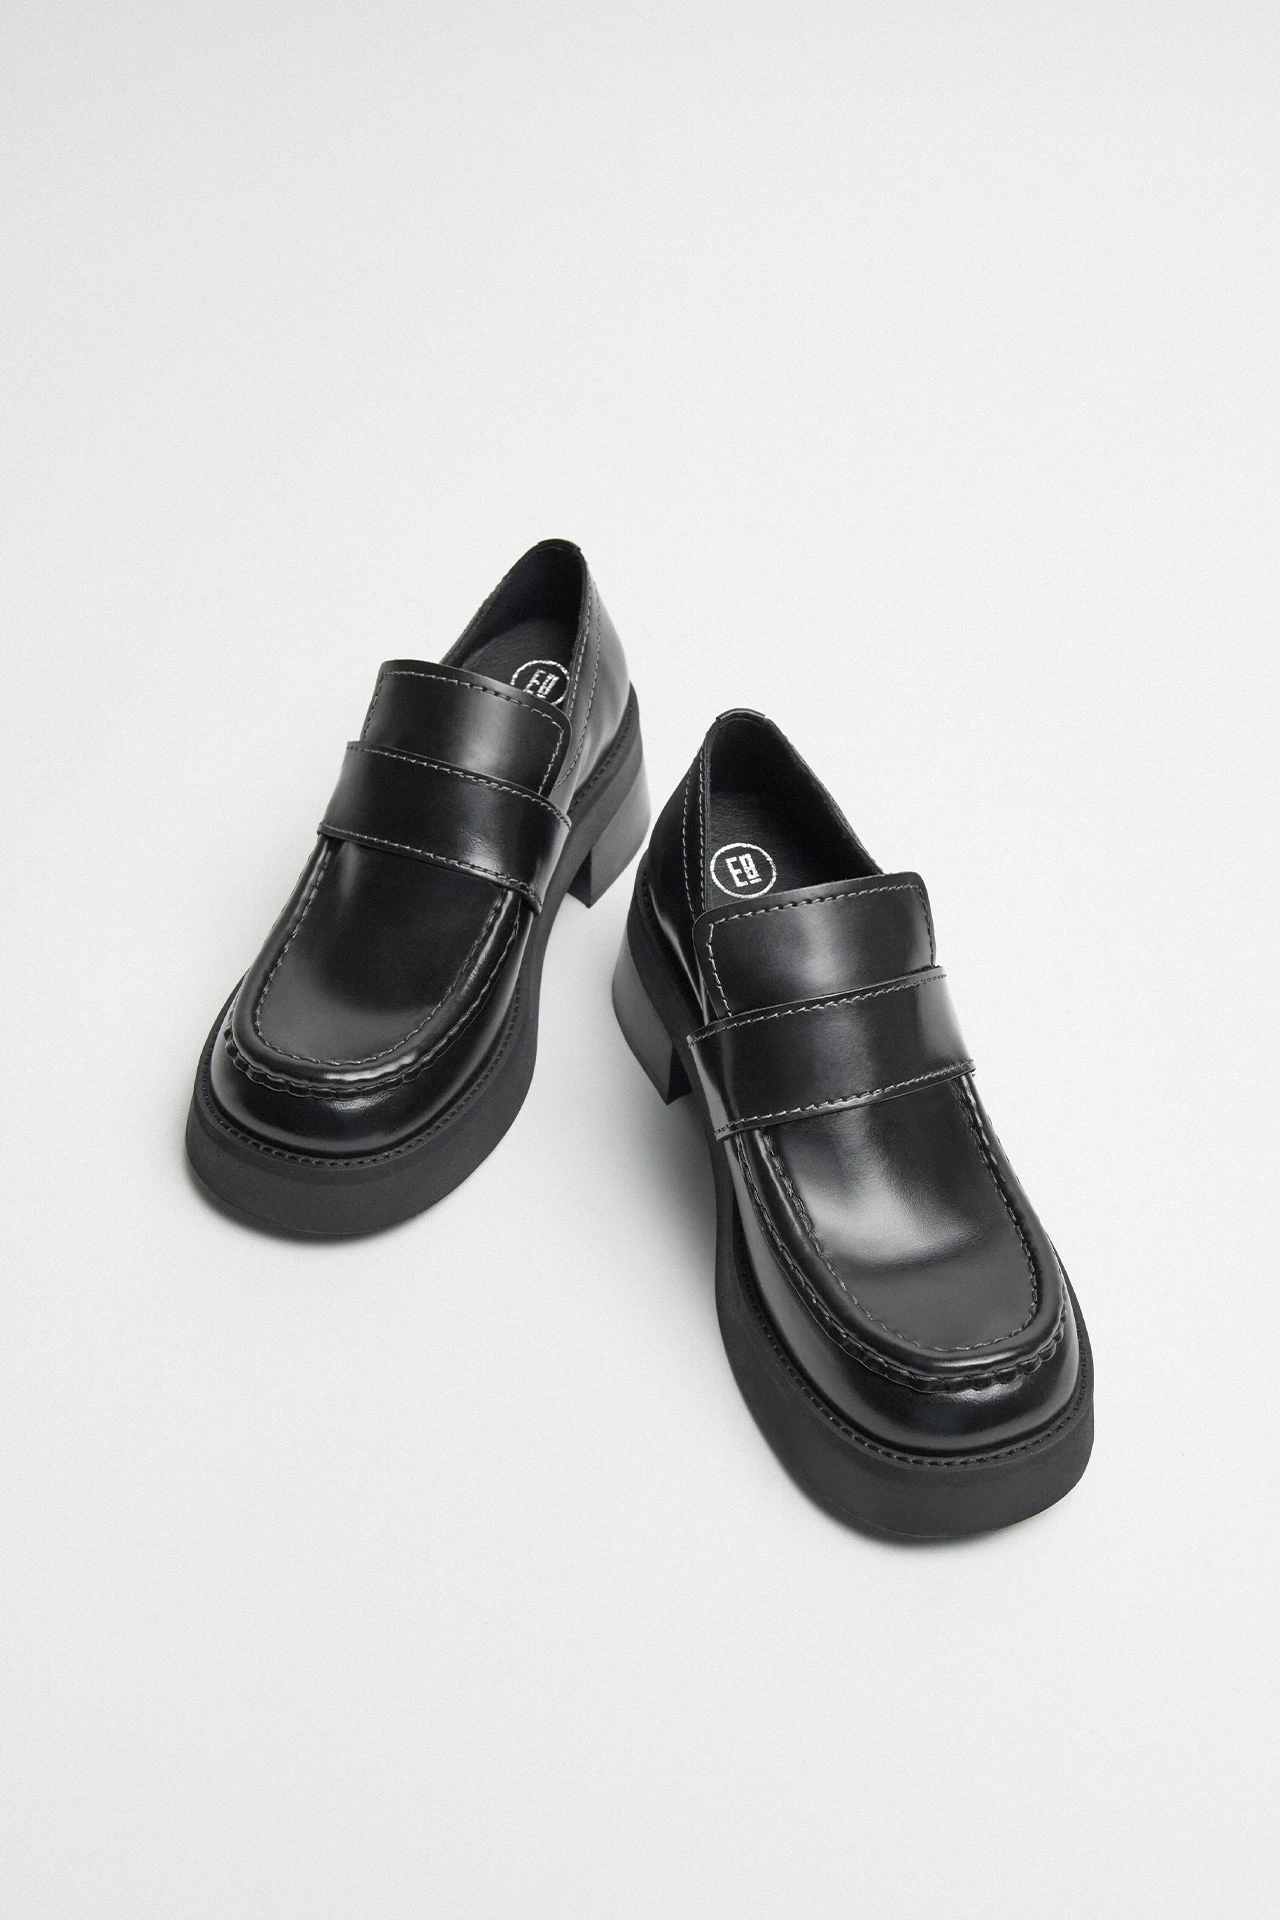 E8-lib-black-loafers-04